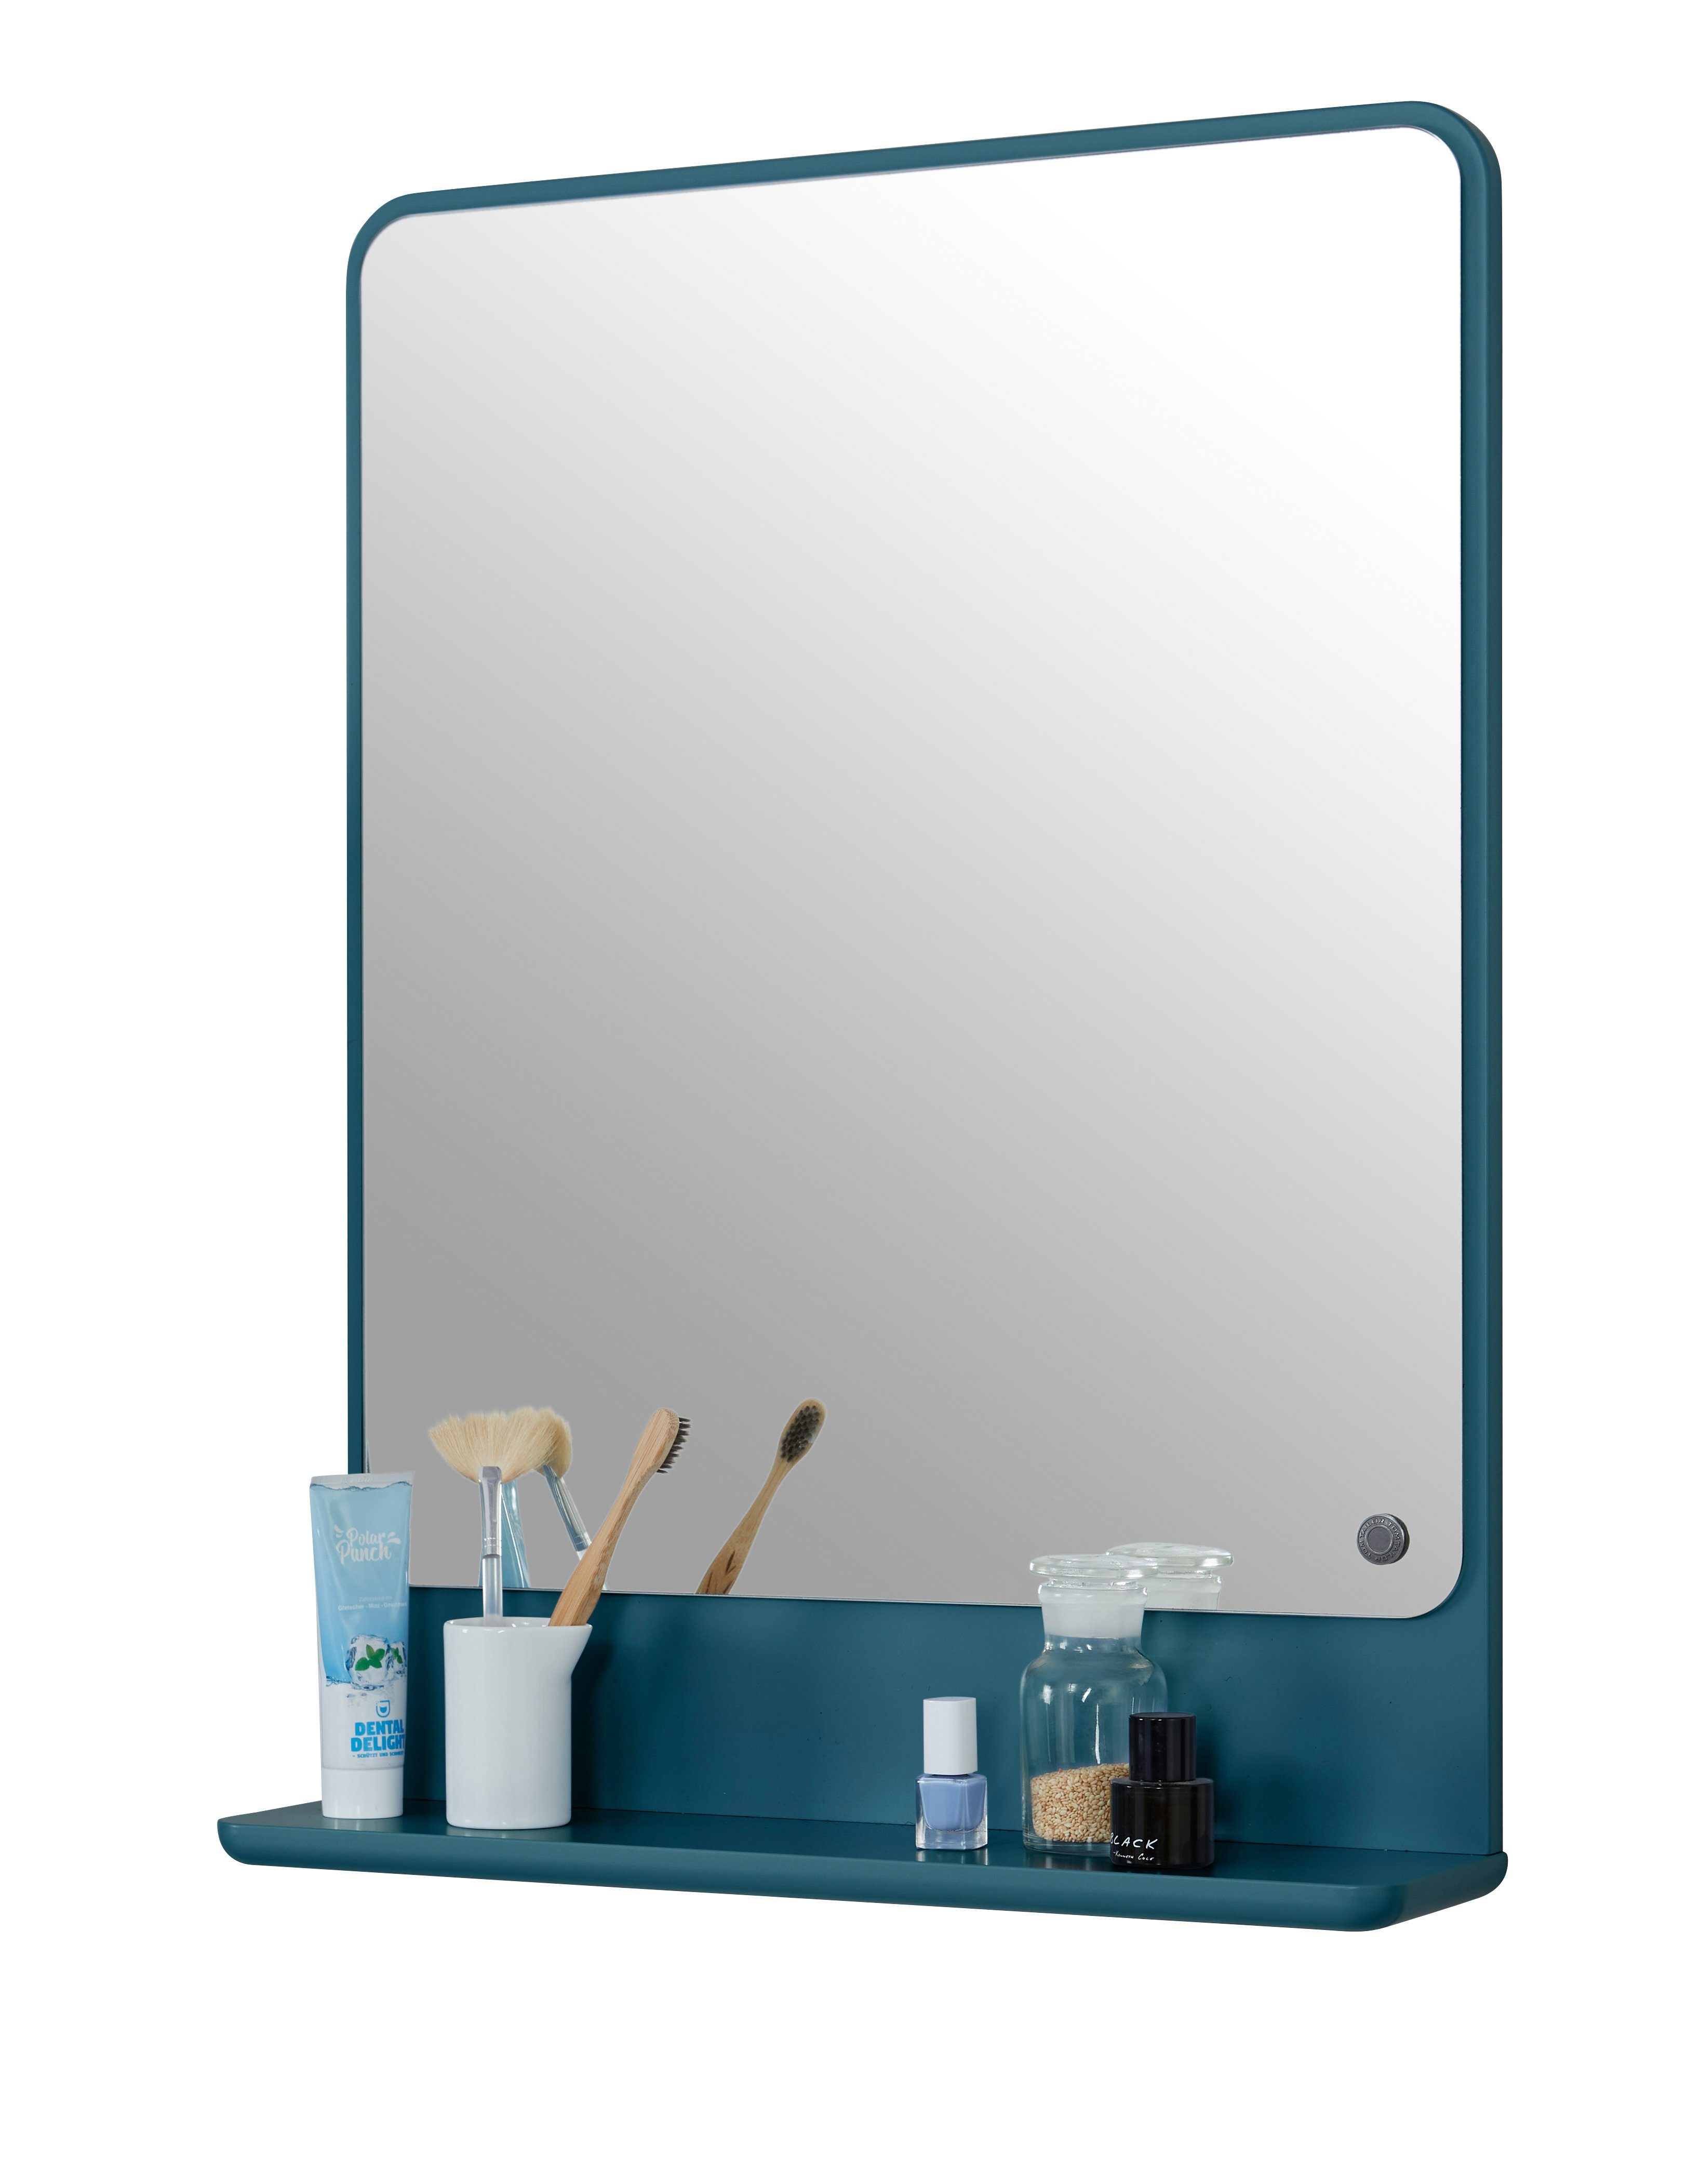 TOM TAILOR HOME Badspiegel COLOR BATH Spiegelelement - in vielen schönen Farben - 70 x 52 x 13 cm, hochwertig lackiertes MDF, gerundete Kanten petrol023